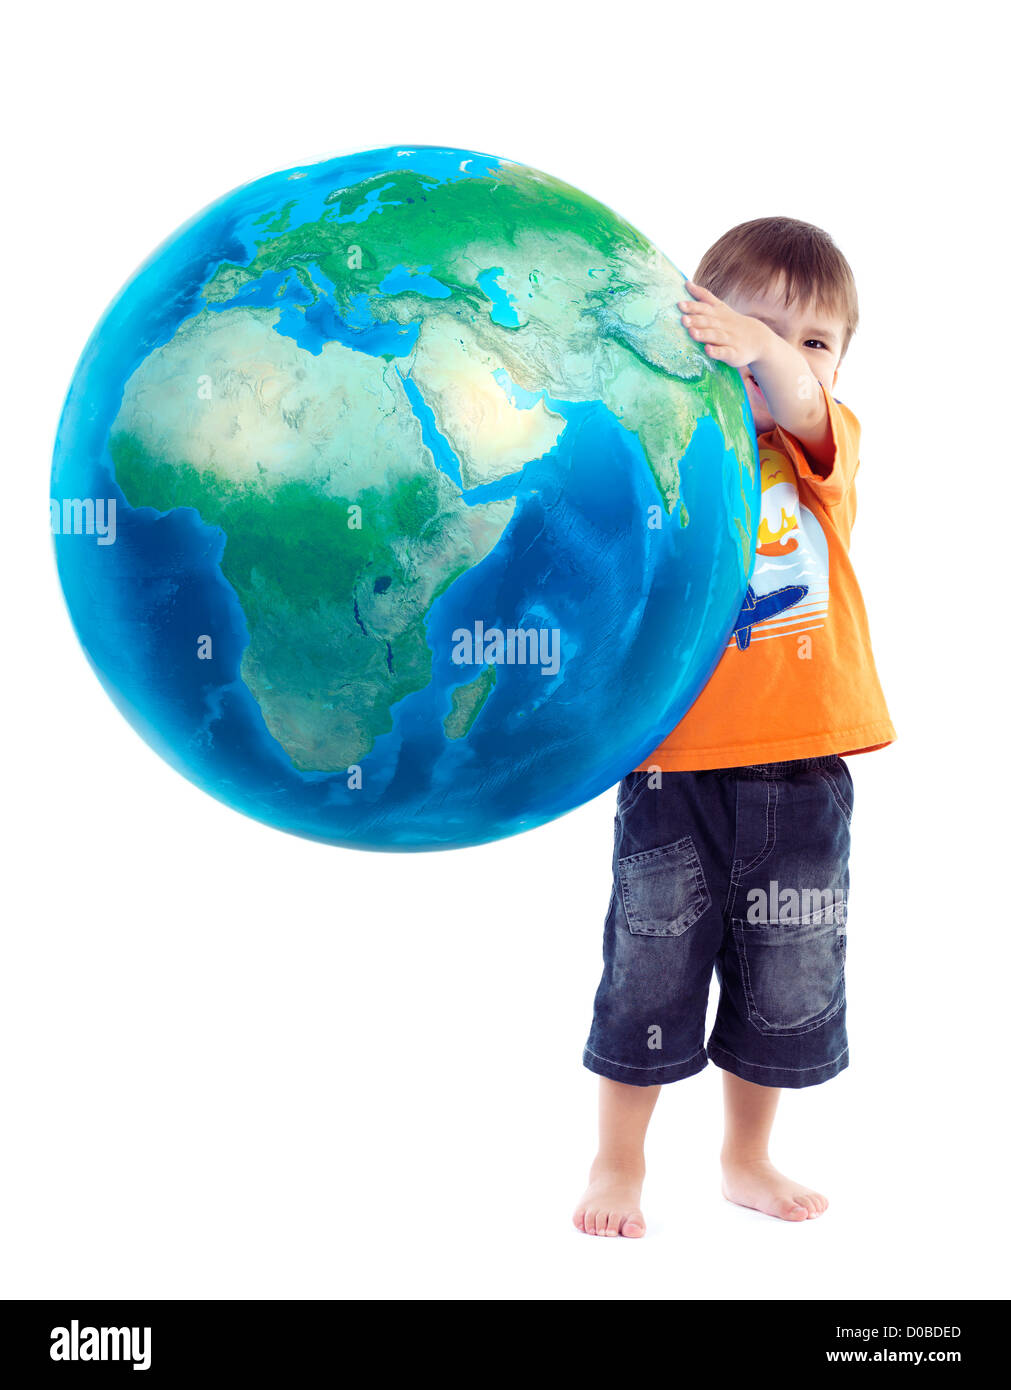 Niedlichen kleinen Jungen halten Globus, blauer Planet Erde in seinen Händen, konzeptionelle Foto isoliert auf weißem Hintergrund. Stockfoto